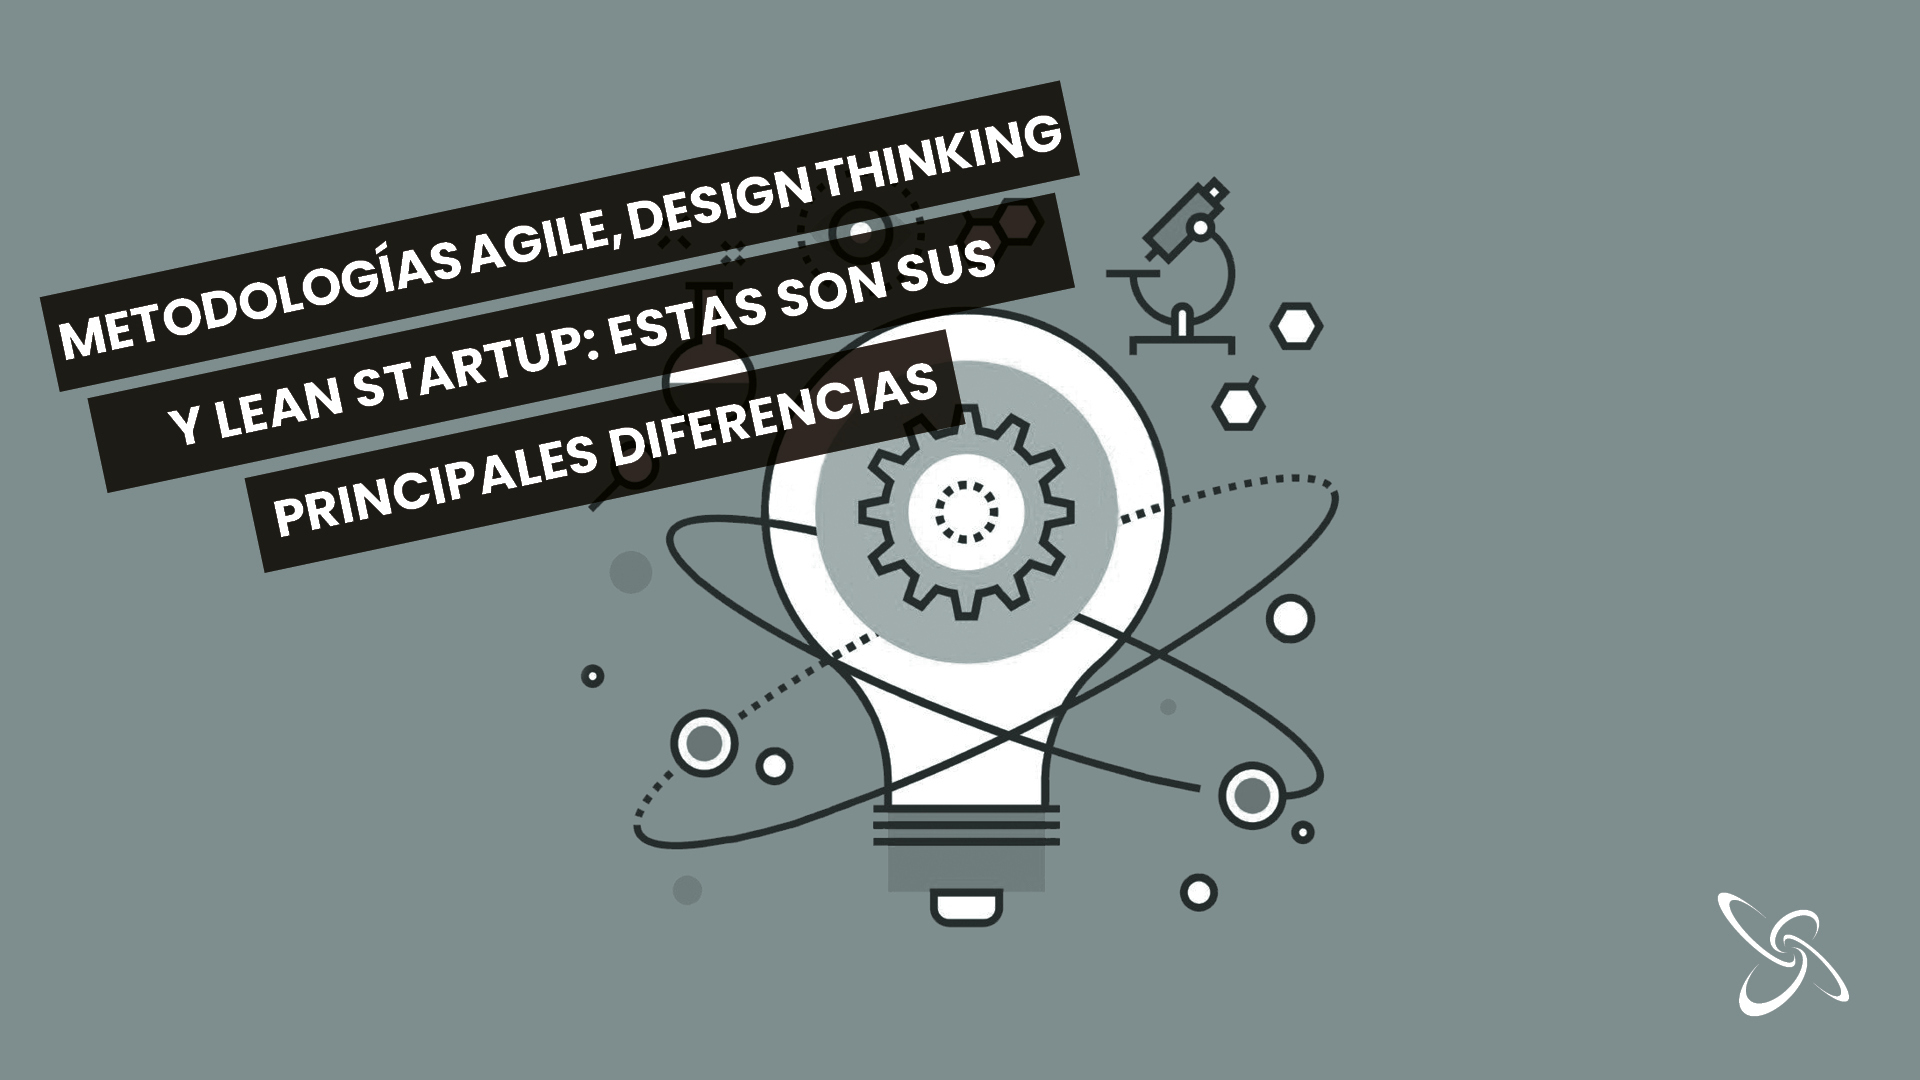 Metodologías Agile, Design Thinking y Lean Startup: estas son sus principales diferencias